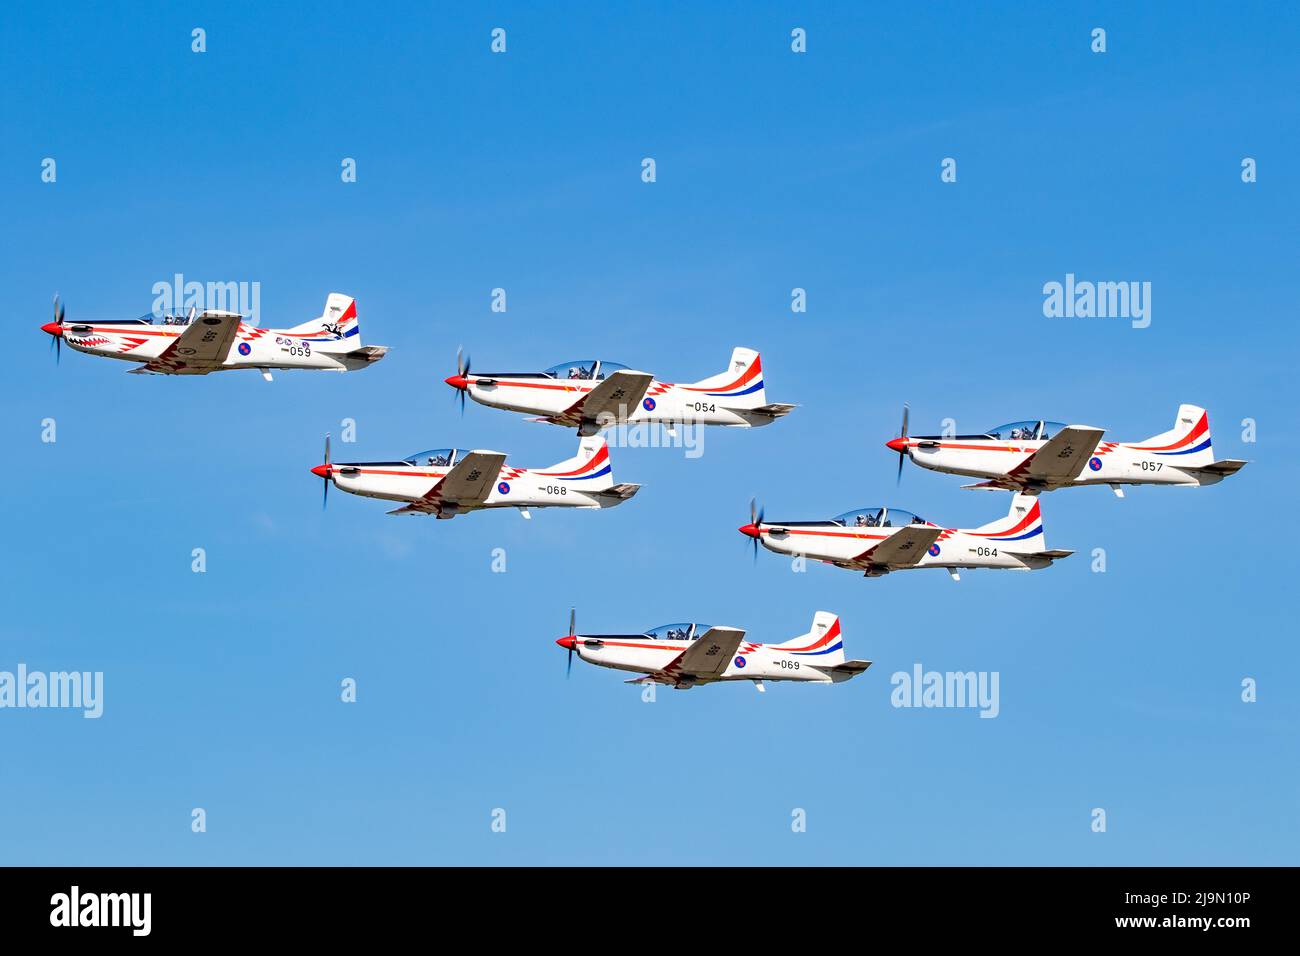 L'équipe militaire croate d'exposition acrobatique Wings of Storm Pilatus PC-9 turbopropulseur se présentant au salon de l'aéronautique sur la base aérienne de Kleine-Brogel. Belgique - septembre Banque D'Images